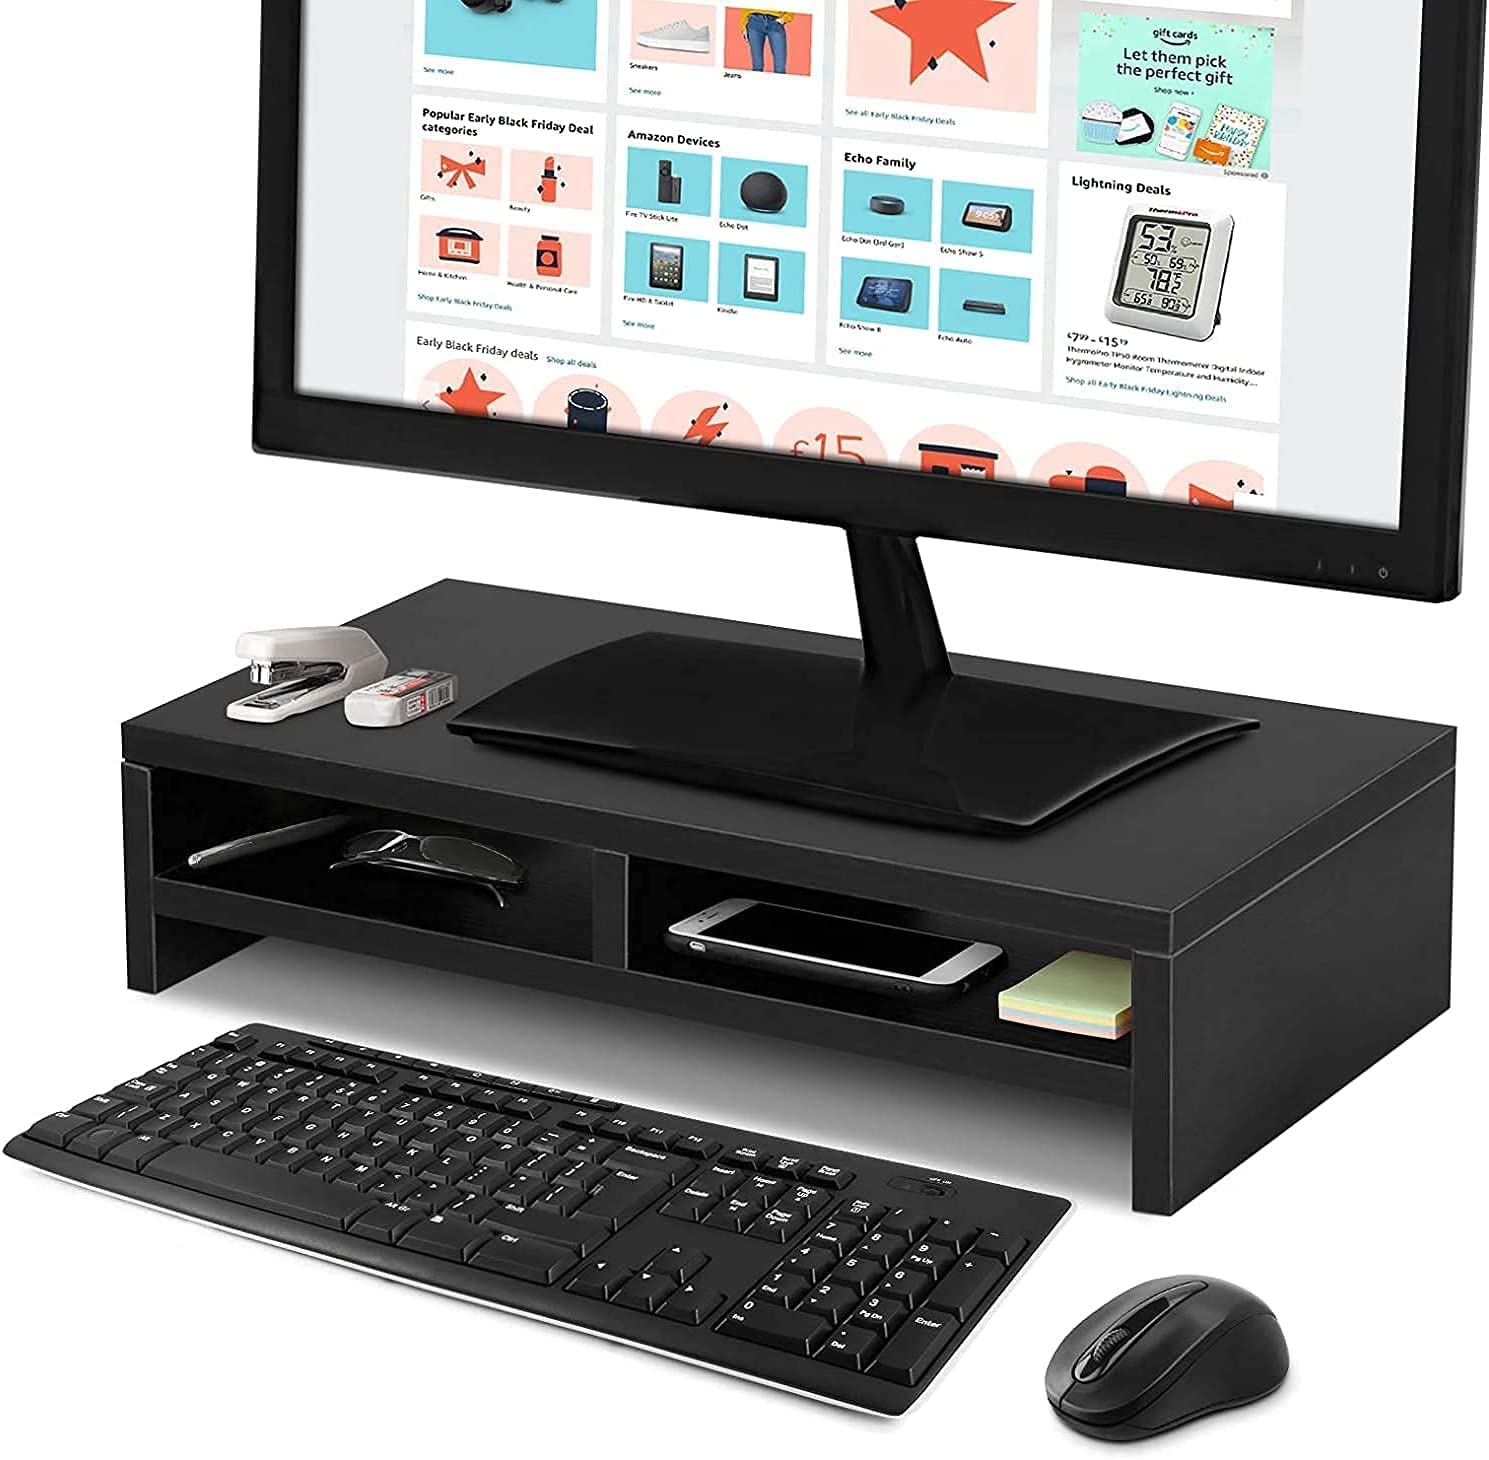 PC Bildschirm Ständer, Desktop Organizer Ständer PC Monitor Ständer Monitorständer mit 2 Etagen aus Holz für Elever Monitor Computer Büro Haus Erhöhung LCD Mac PC Laptop 50 x 20 x 11,7 cm (schwarz)